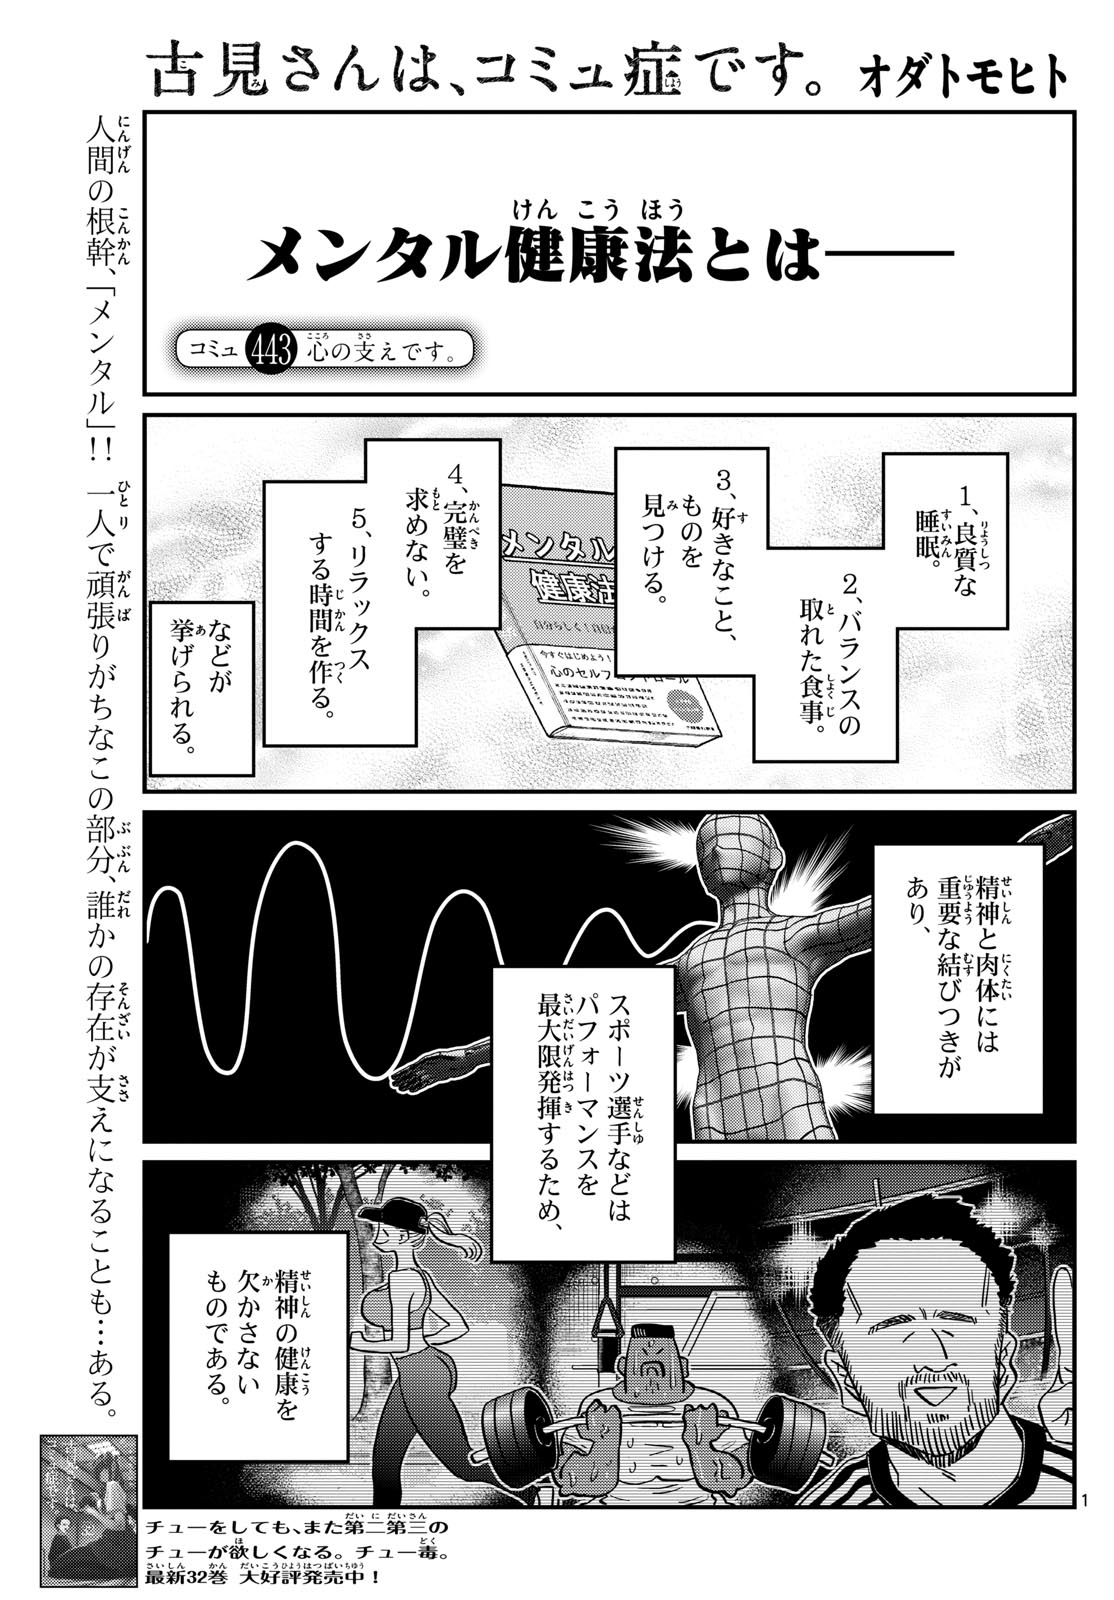 Komi-san wa Komyushou Desu - Chapter 443 - Page 1